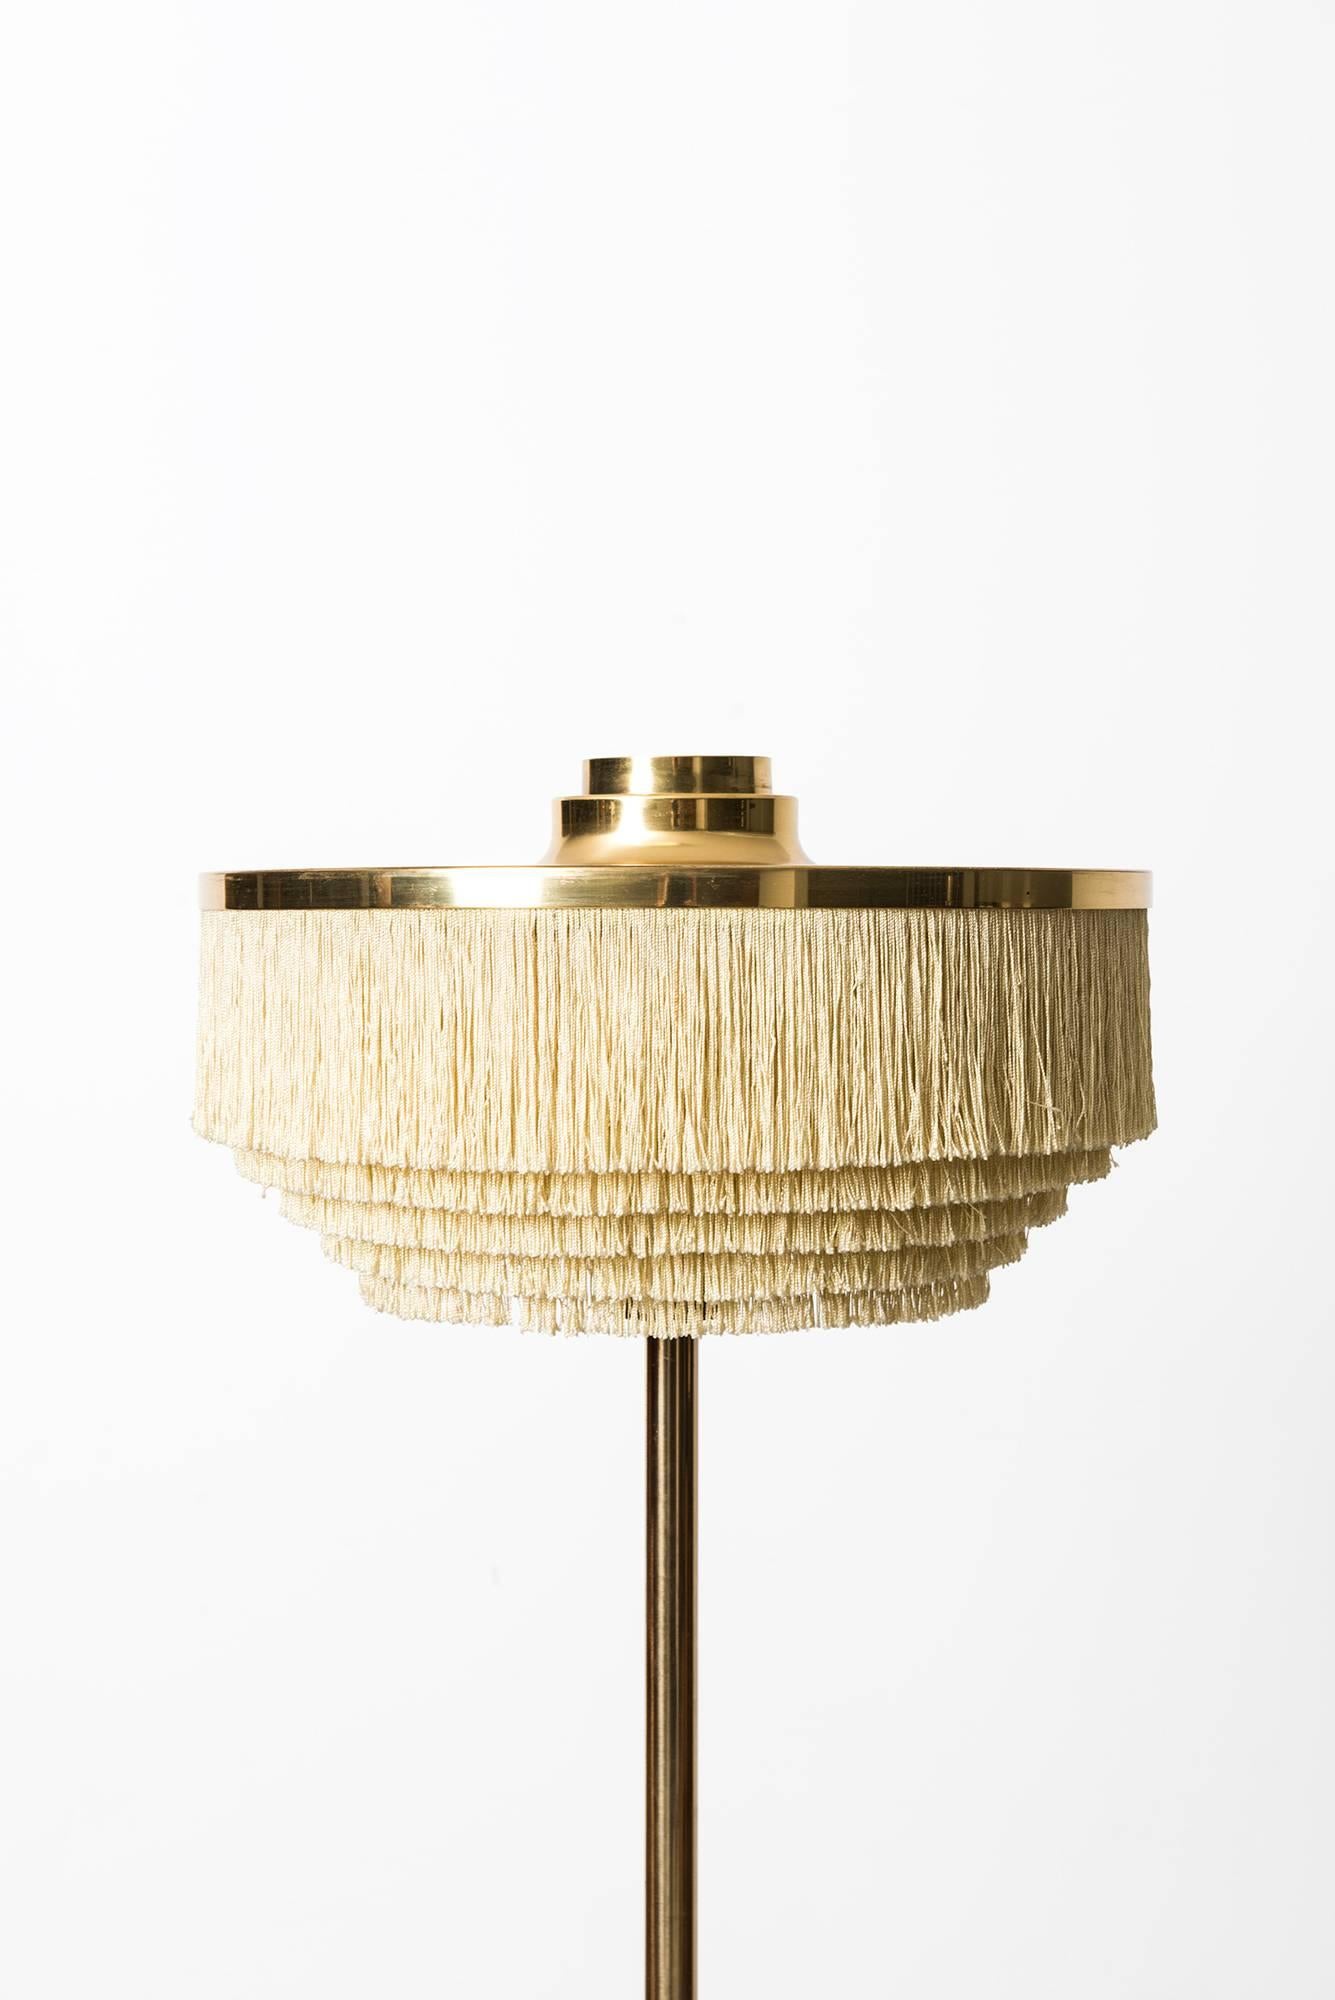 Rare table lamp model B-138 designed by Hans-Agne Jakobsson. Produced by Hans-Agne Jakobsson AB in Markaryd, Sweden.